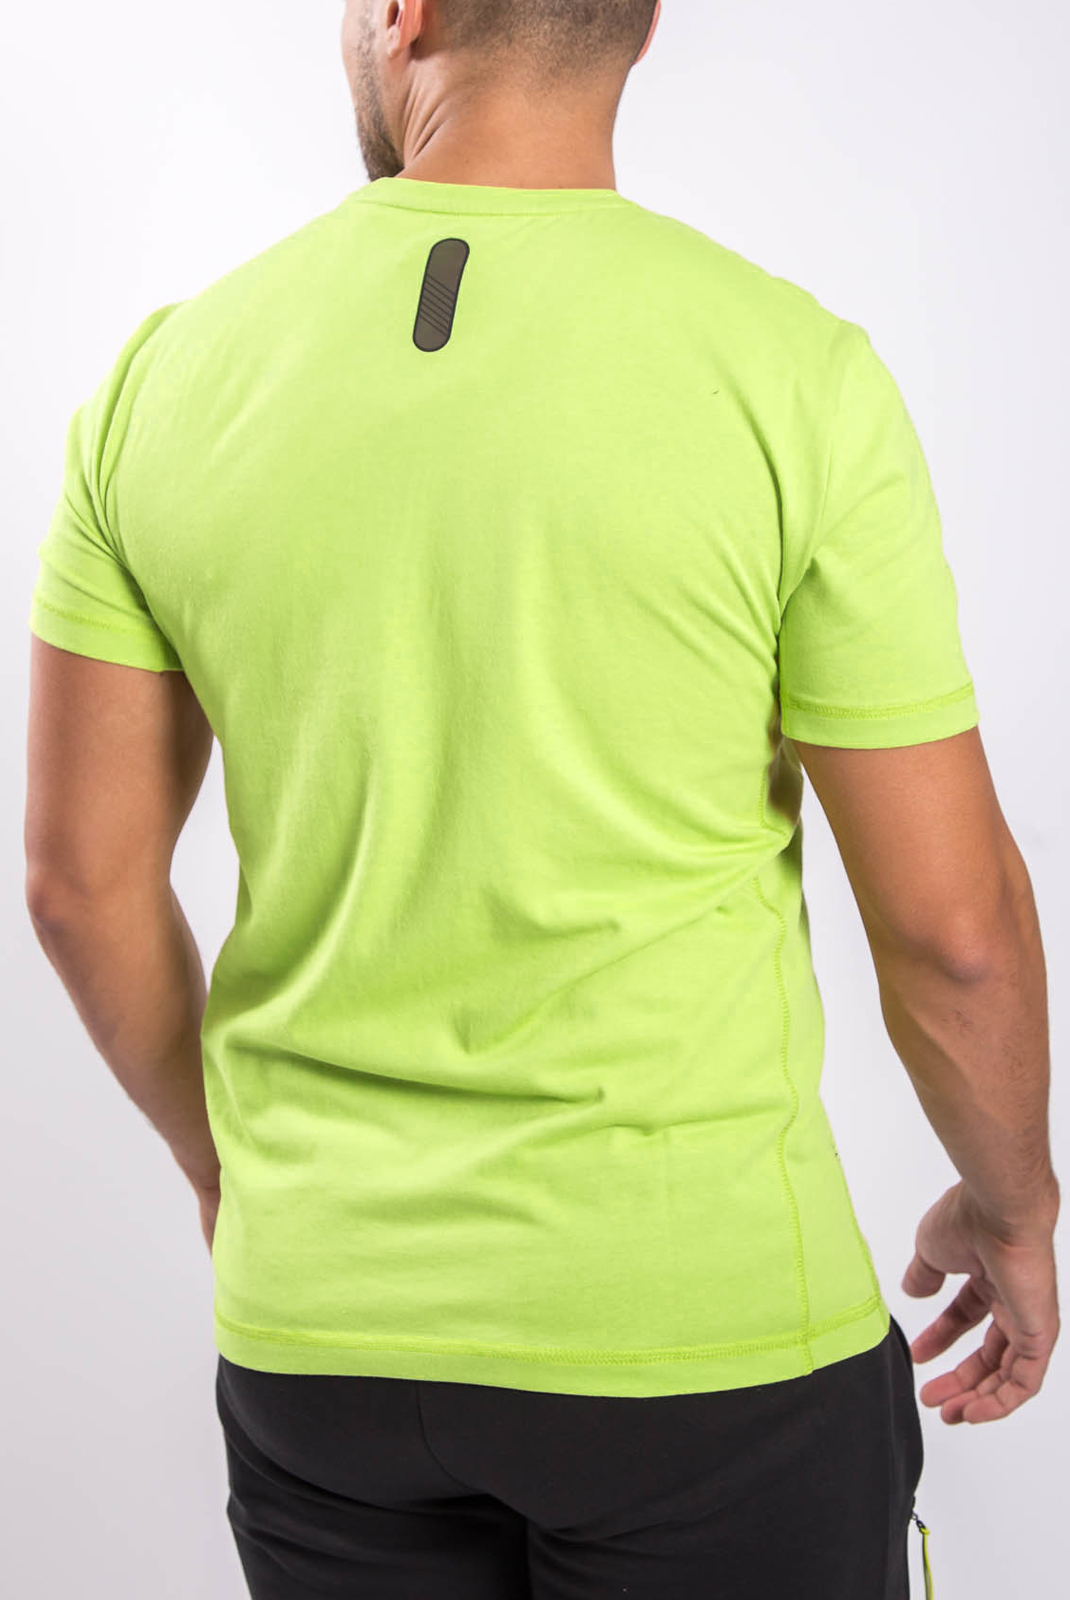 T-shirt vert pour homme à manches courtes EA7 - 6gpt26 